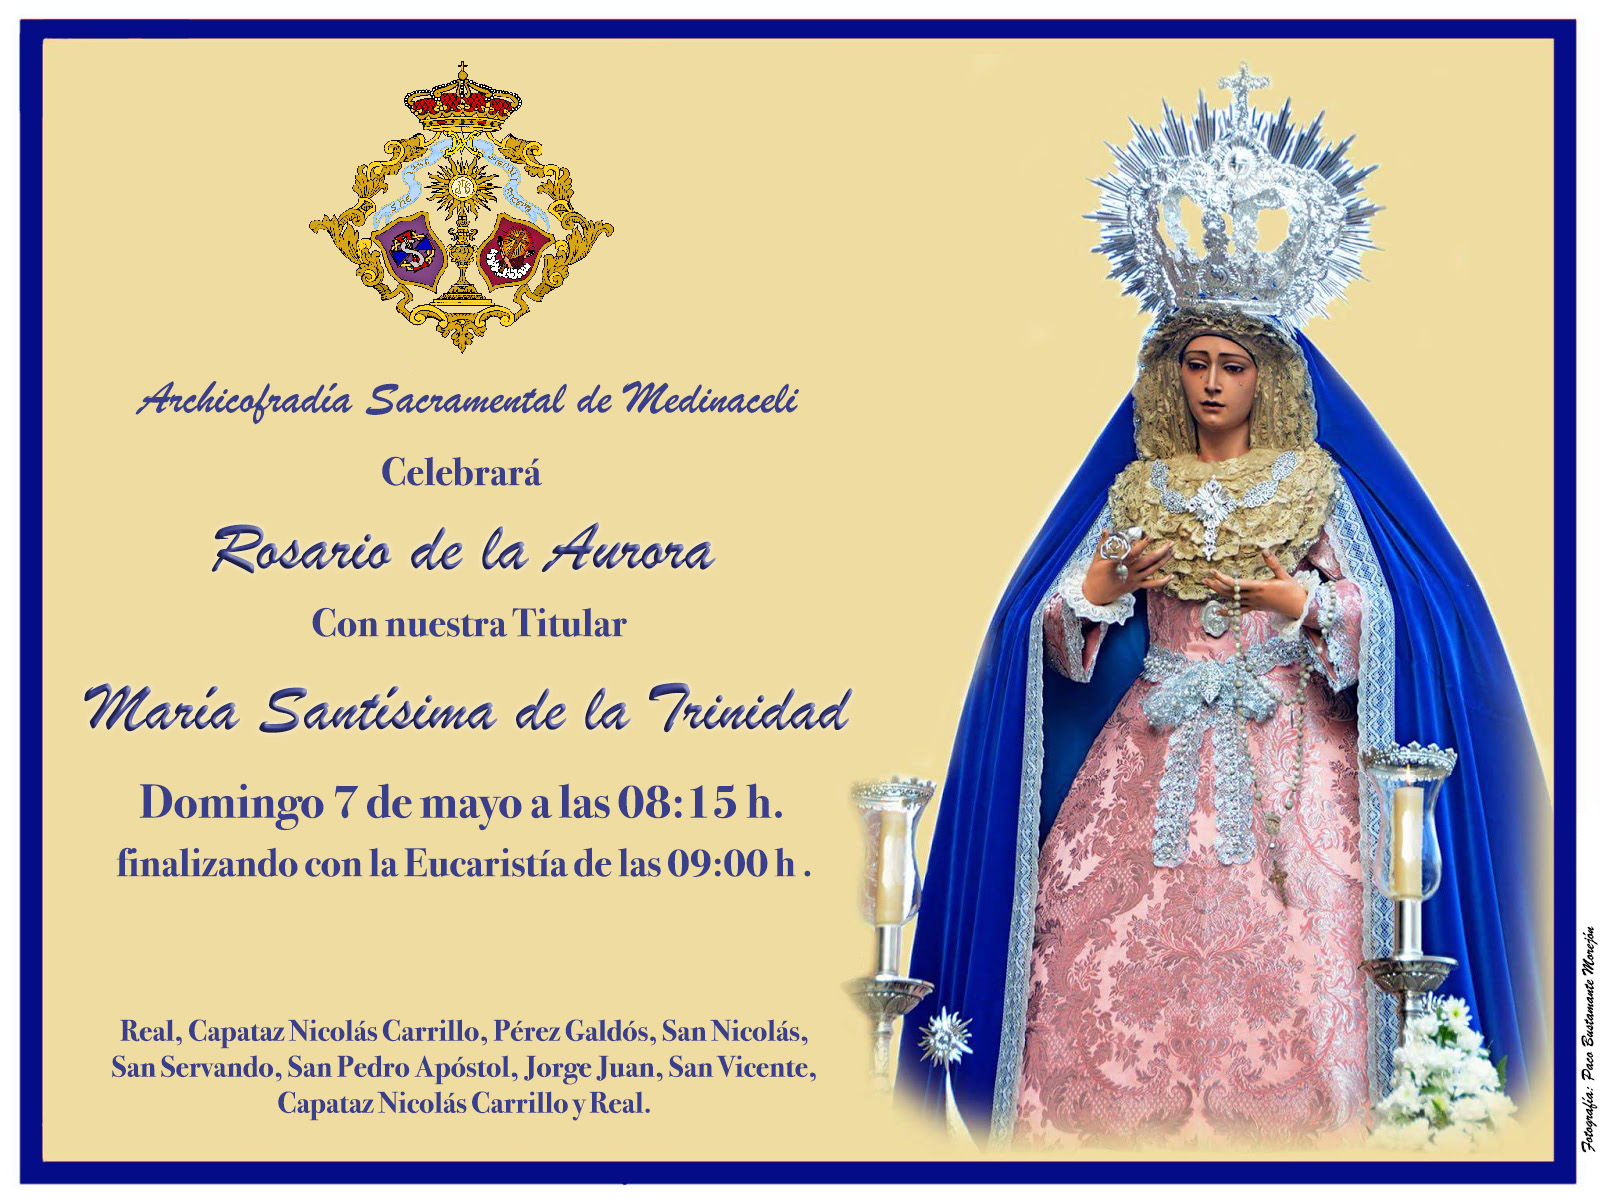 fuga de la prisión Musgo salvar Archicofradía de Medinaceli: Rosario de la Aurora María Santísima de la  Trinidad